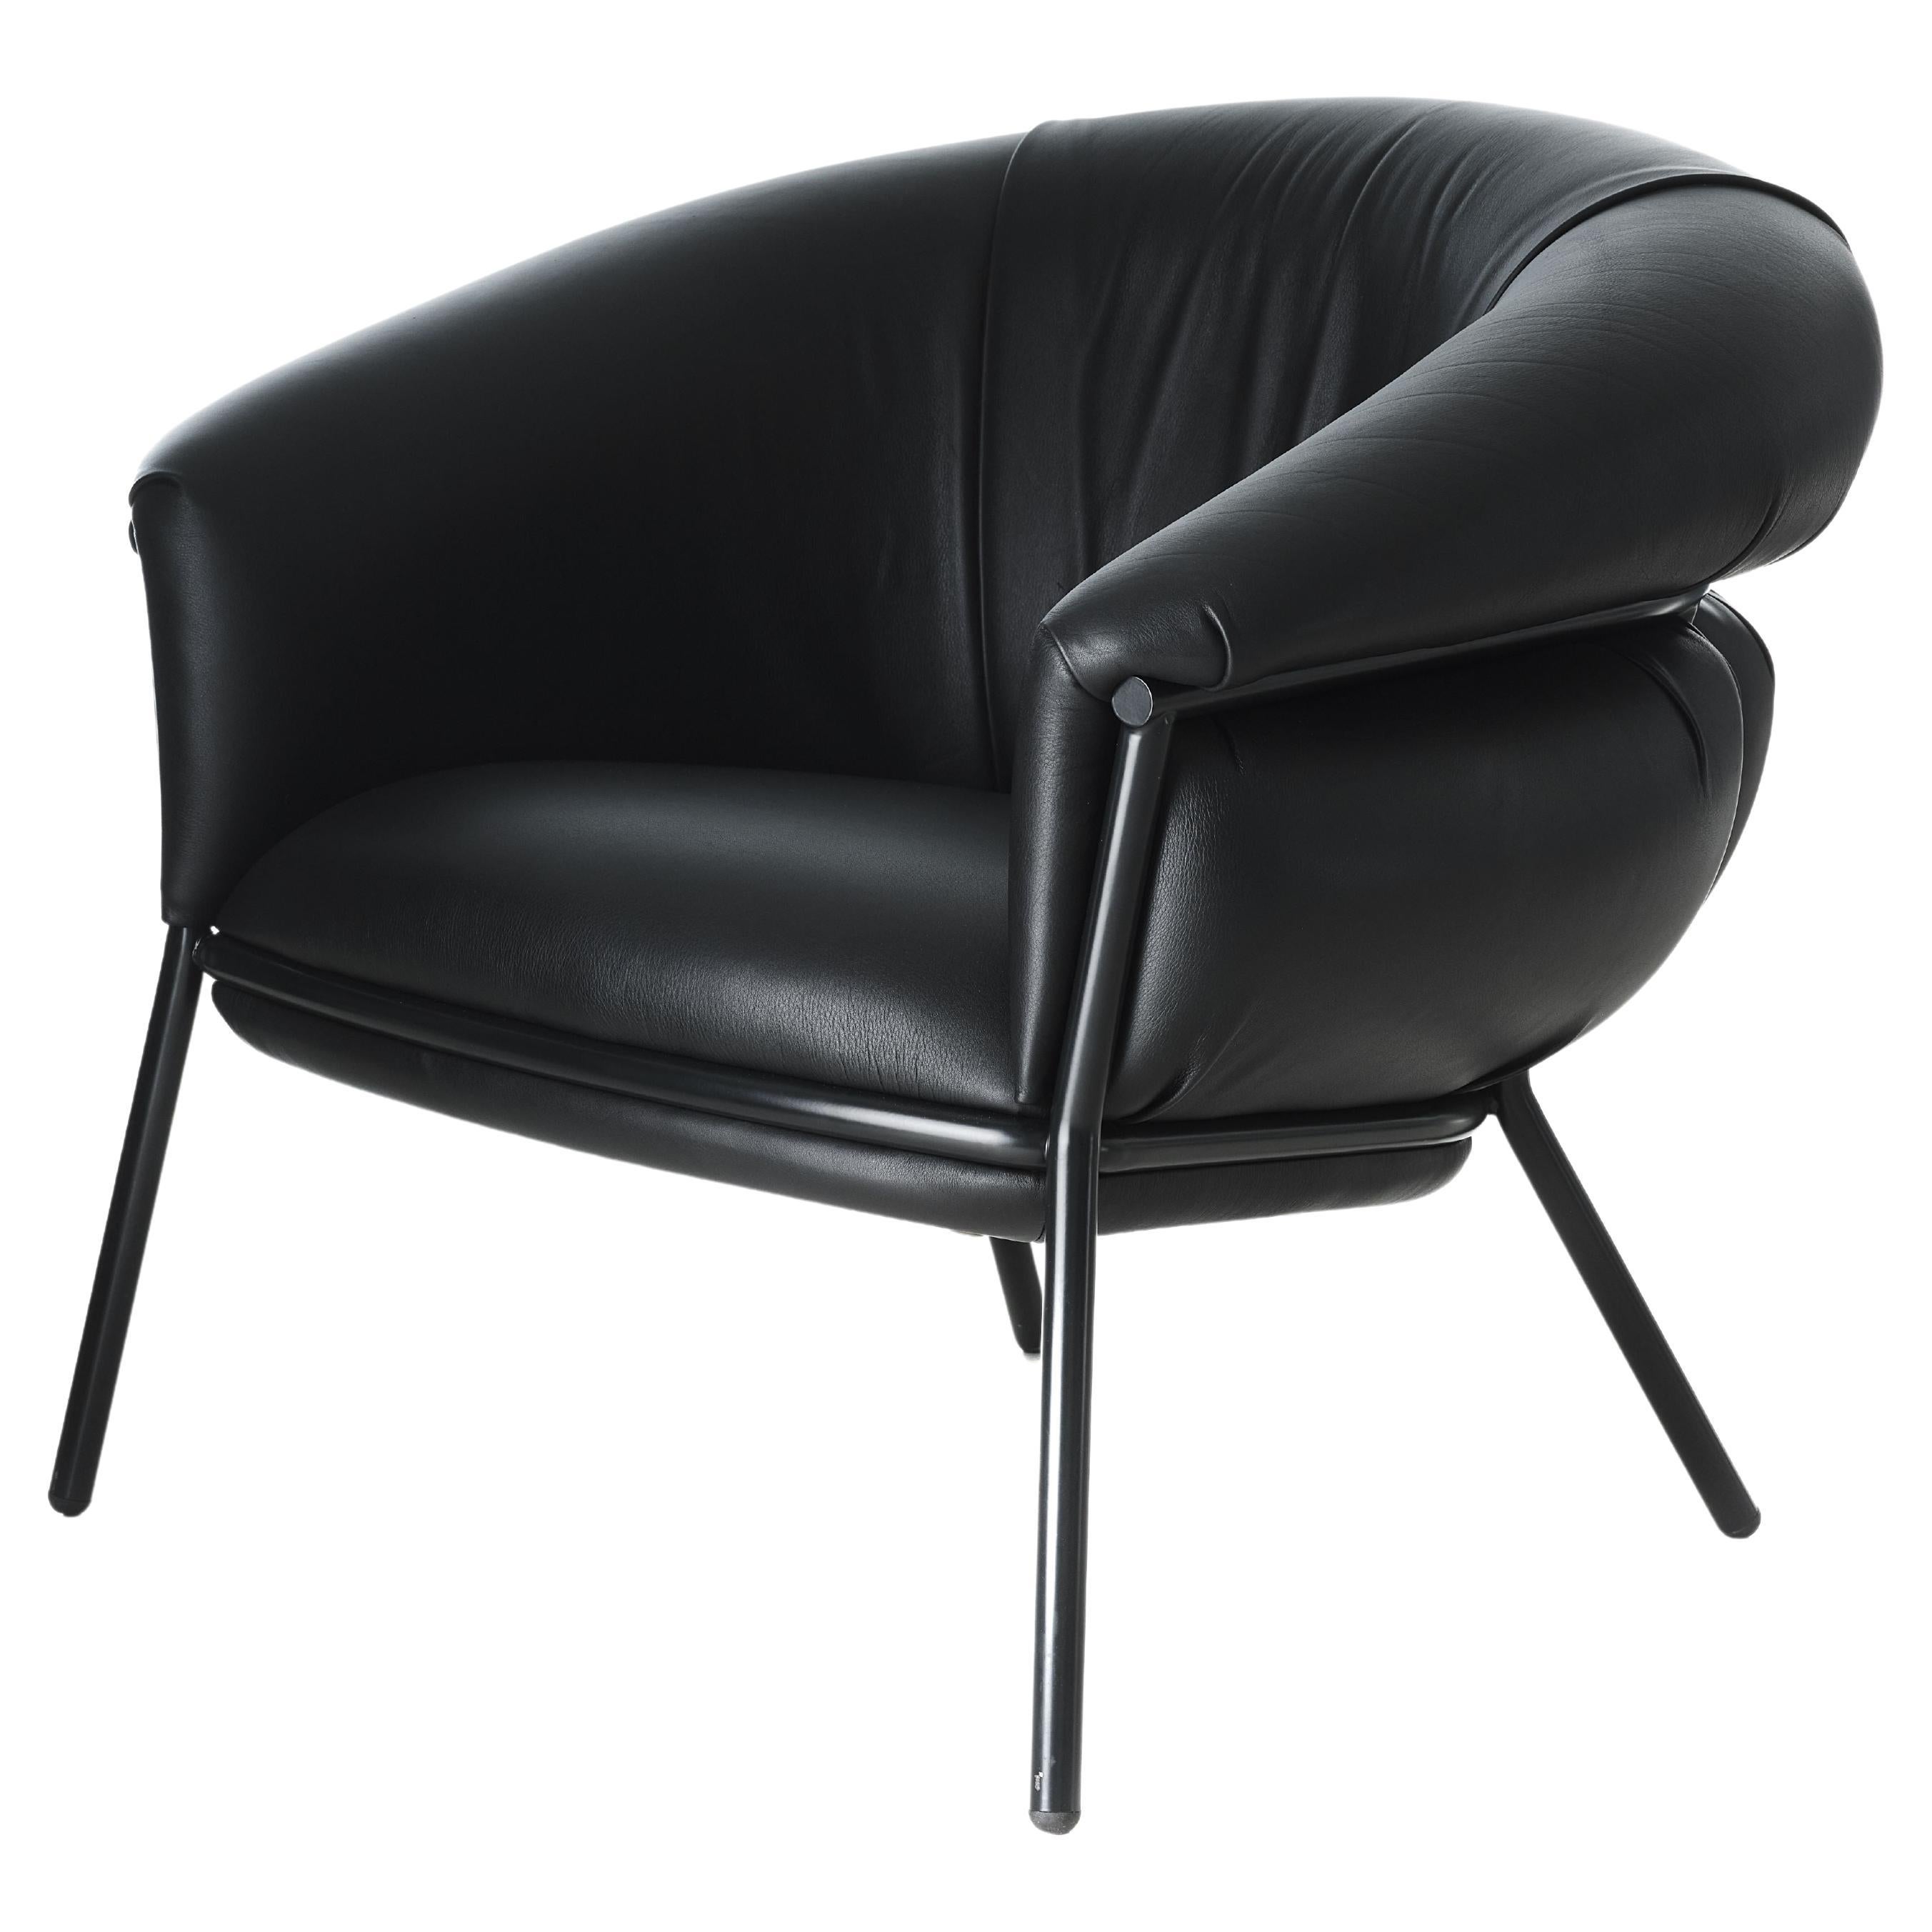 Grasso Sessel von Stephen Burks, schwarz gepolsterte Lederpolsterte schwarze Struktur